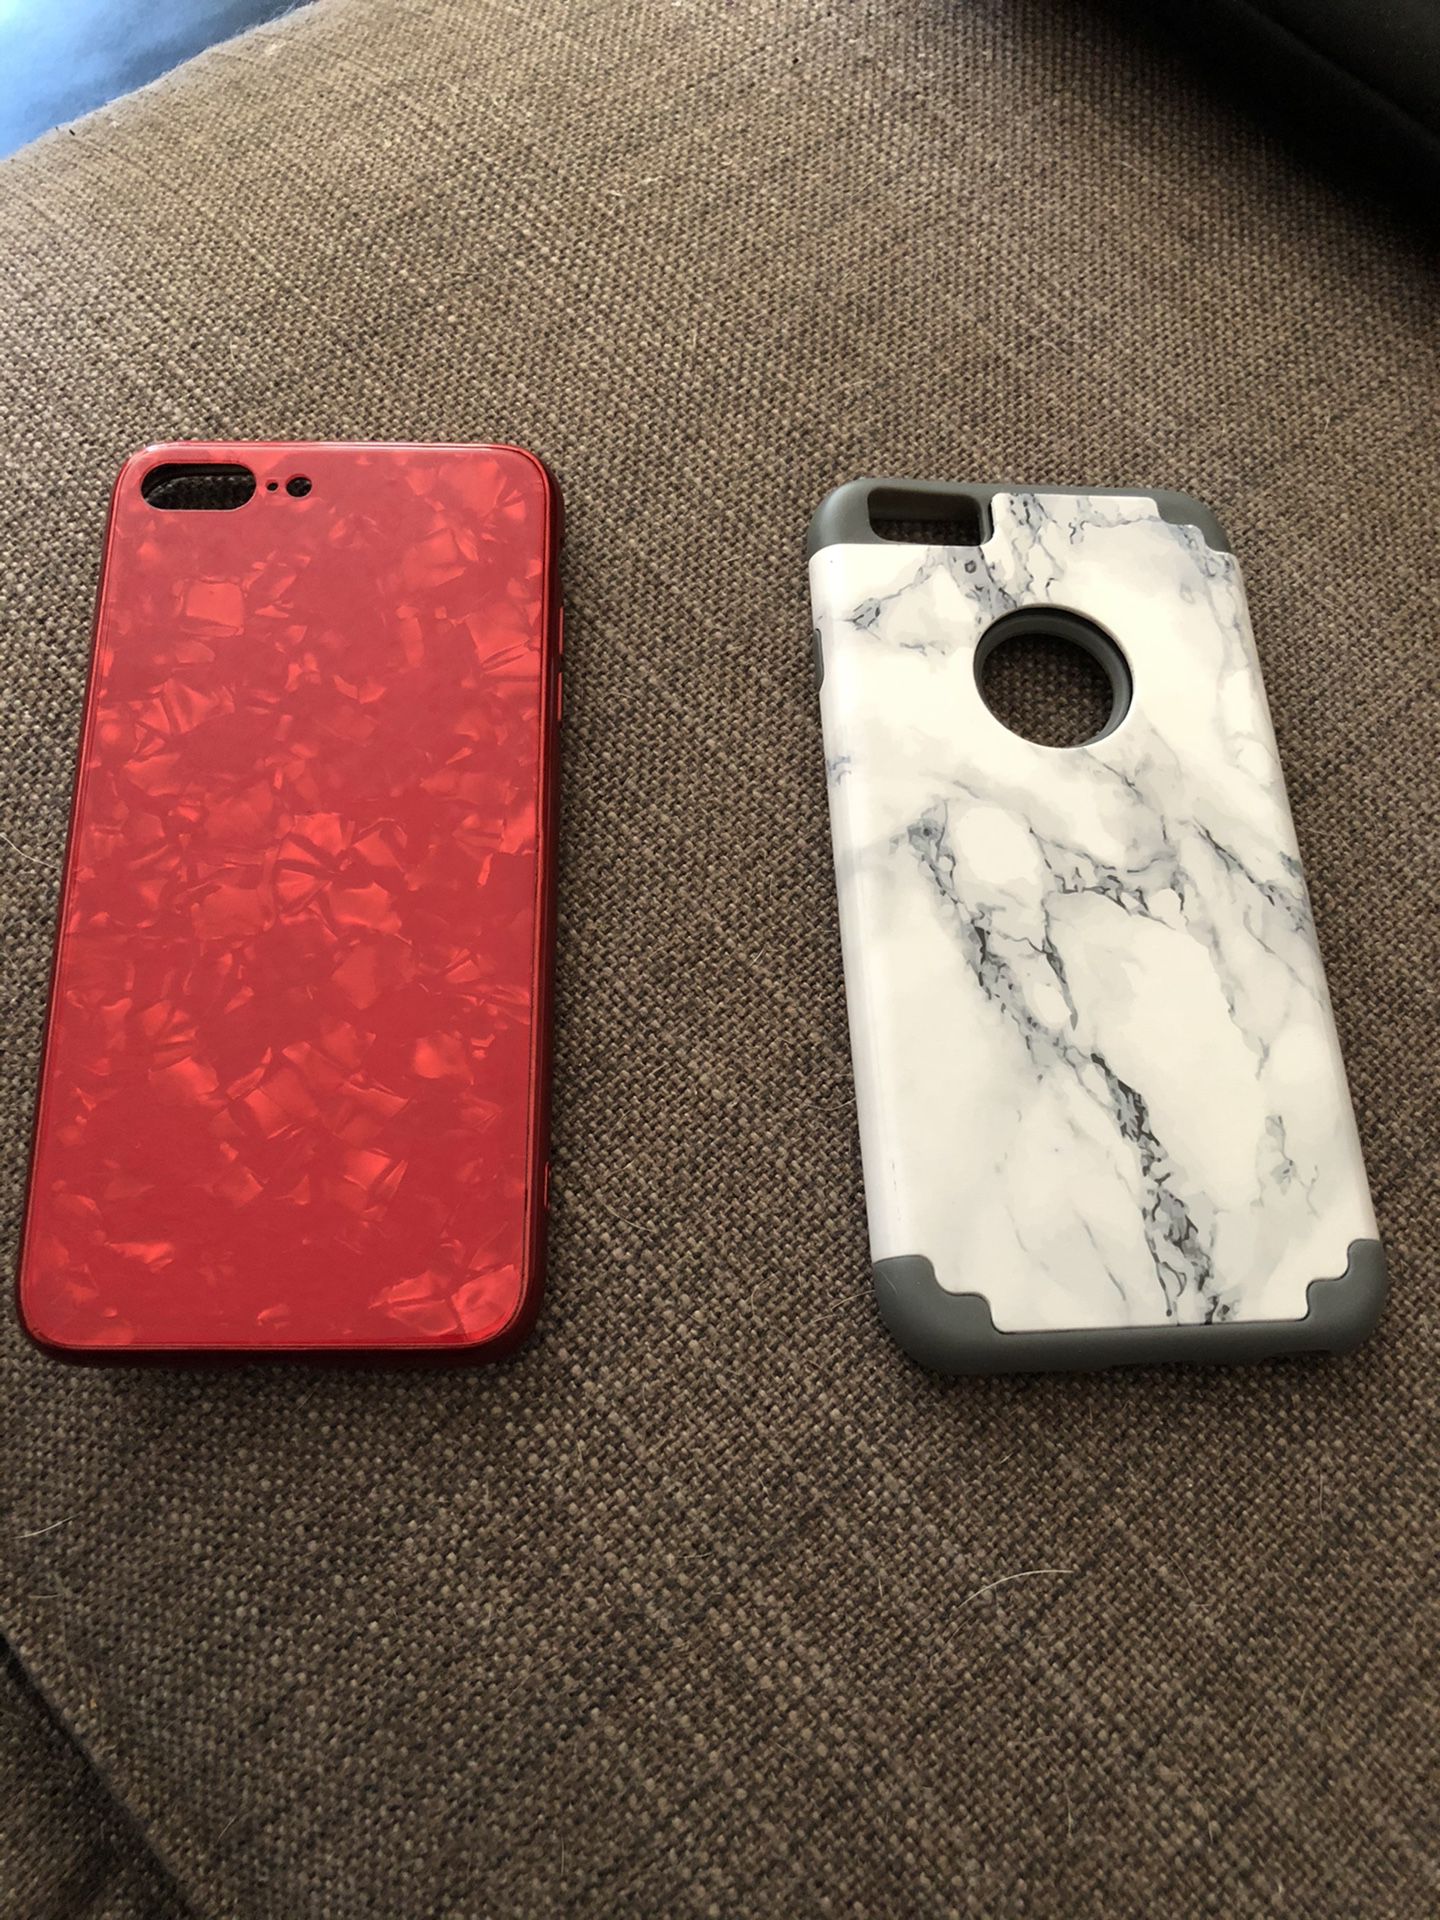 iPhones 7 cases